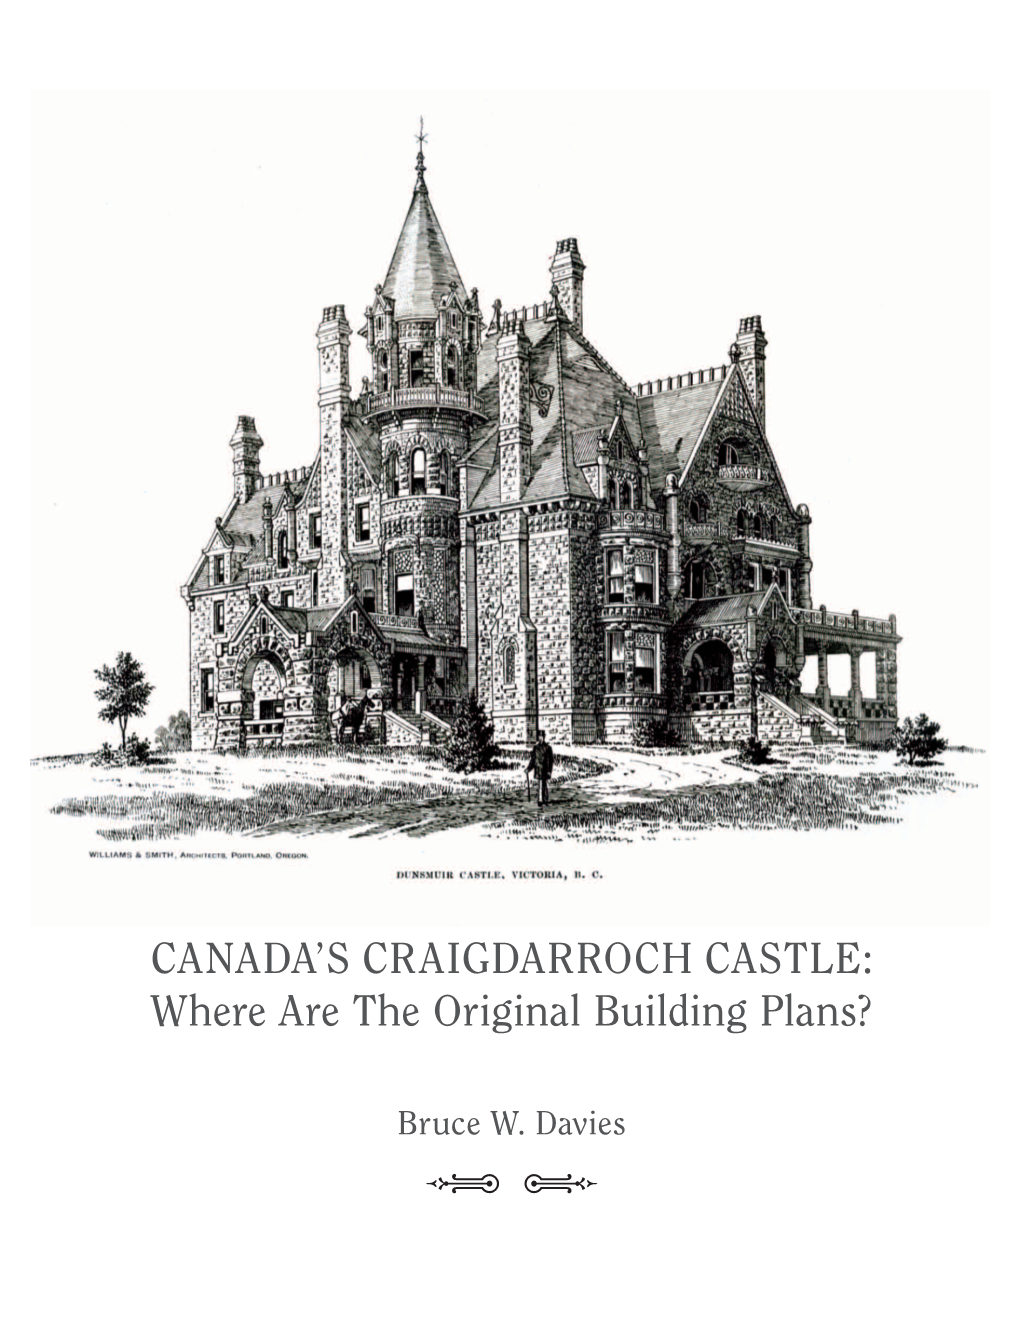 Canada's Craigdarroch Castle